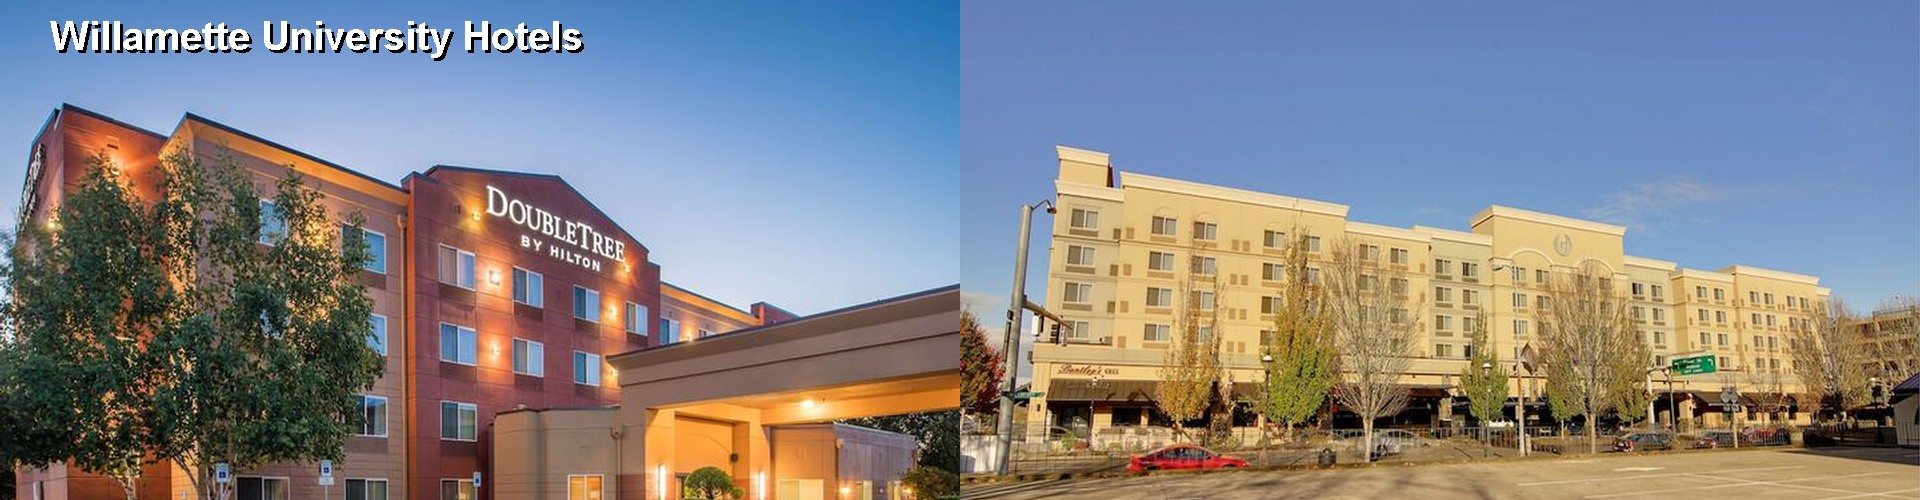 5 Best Hotels near Willamette University